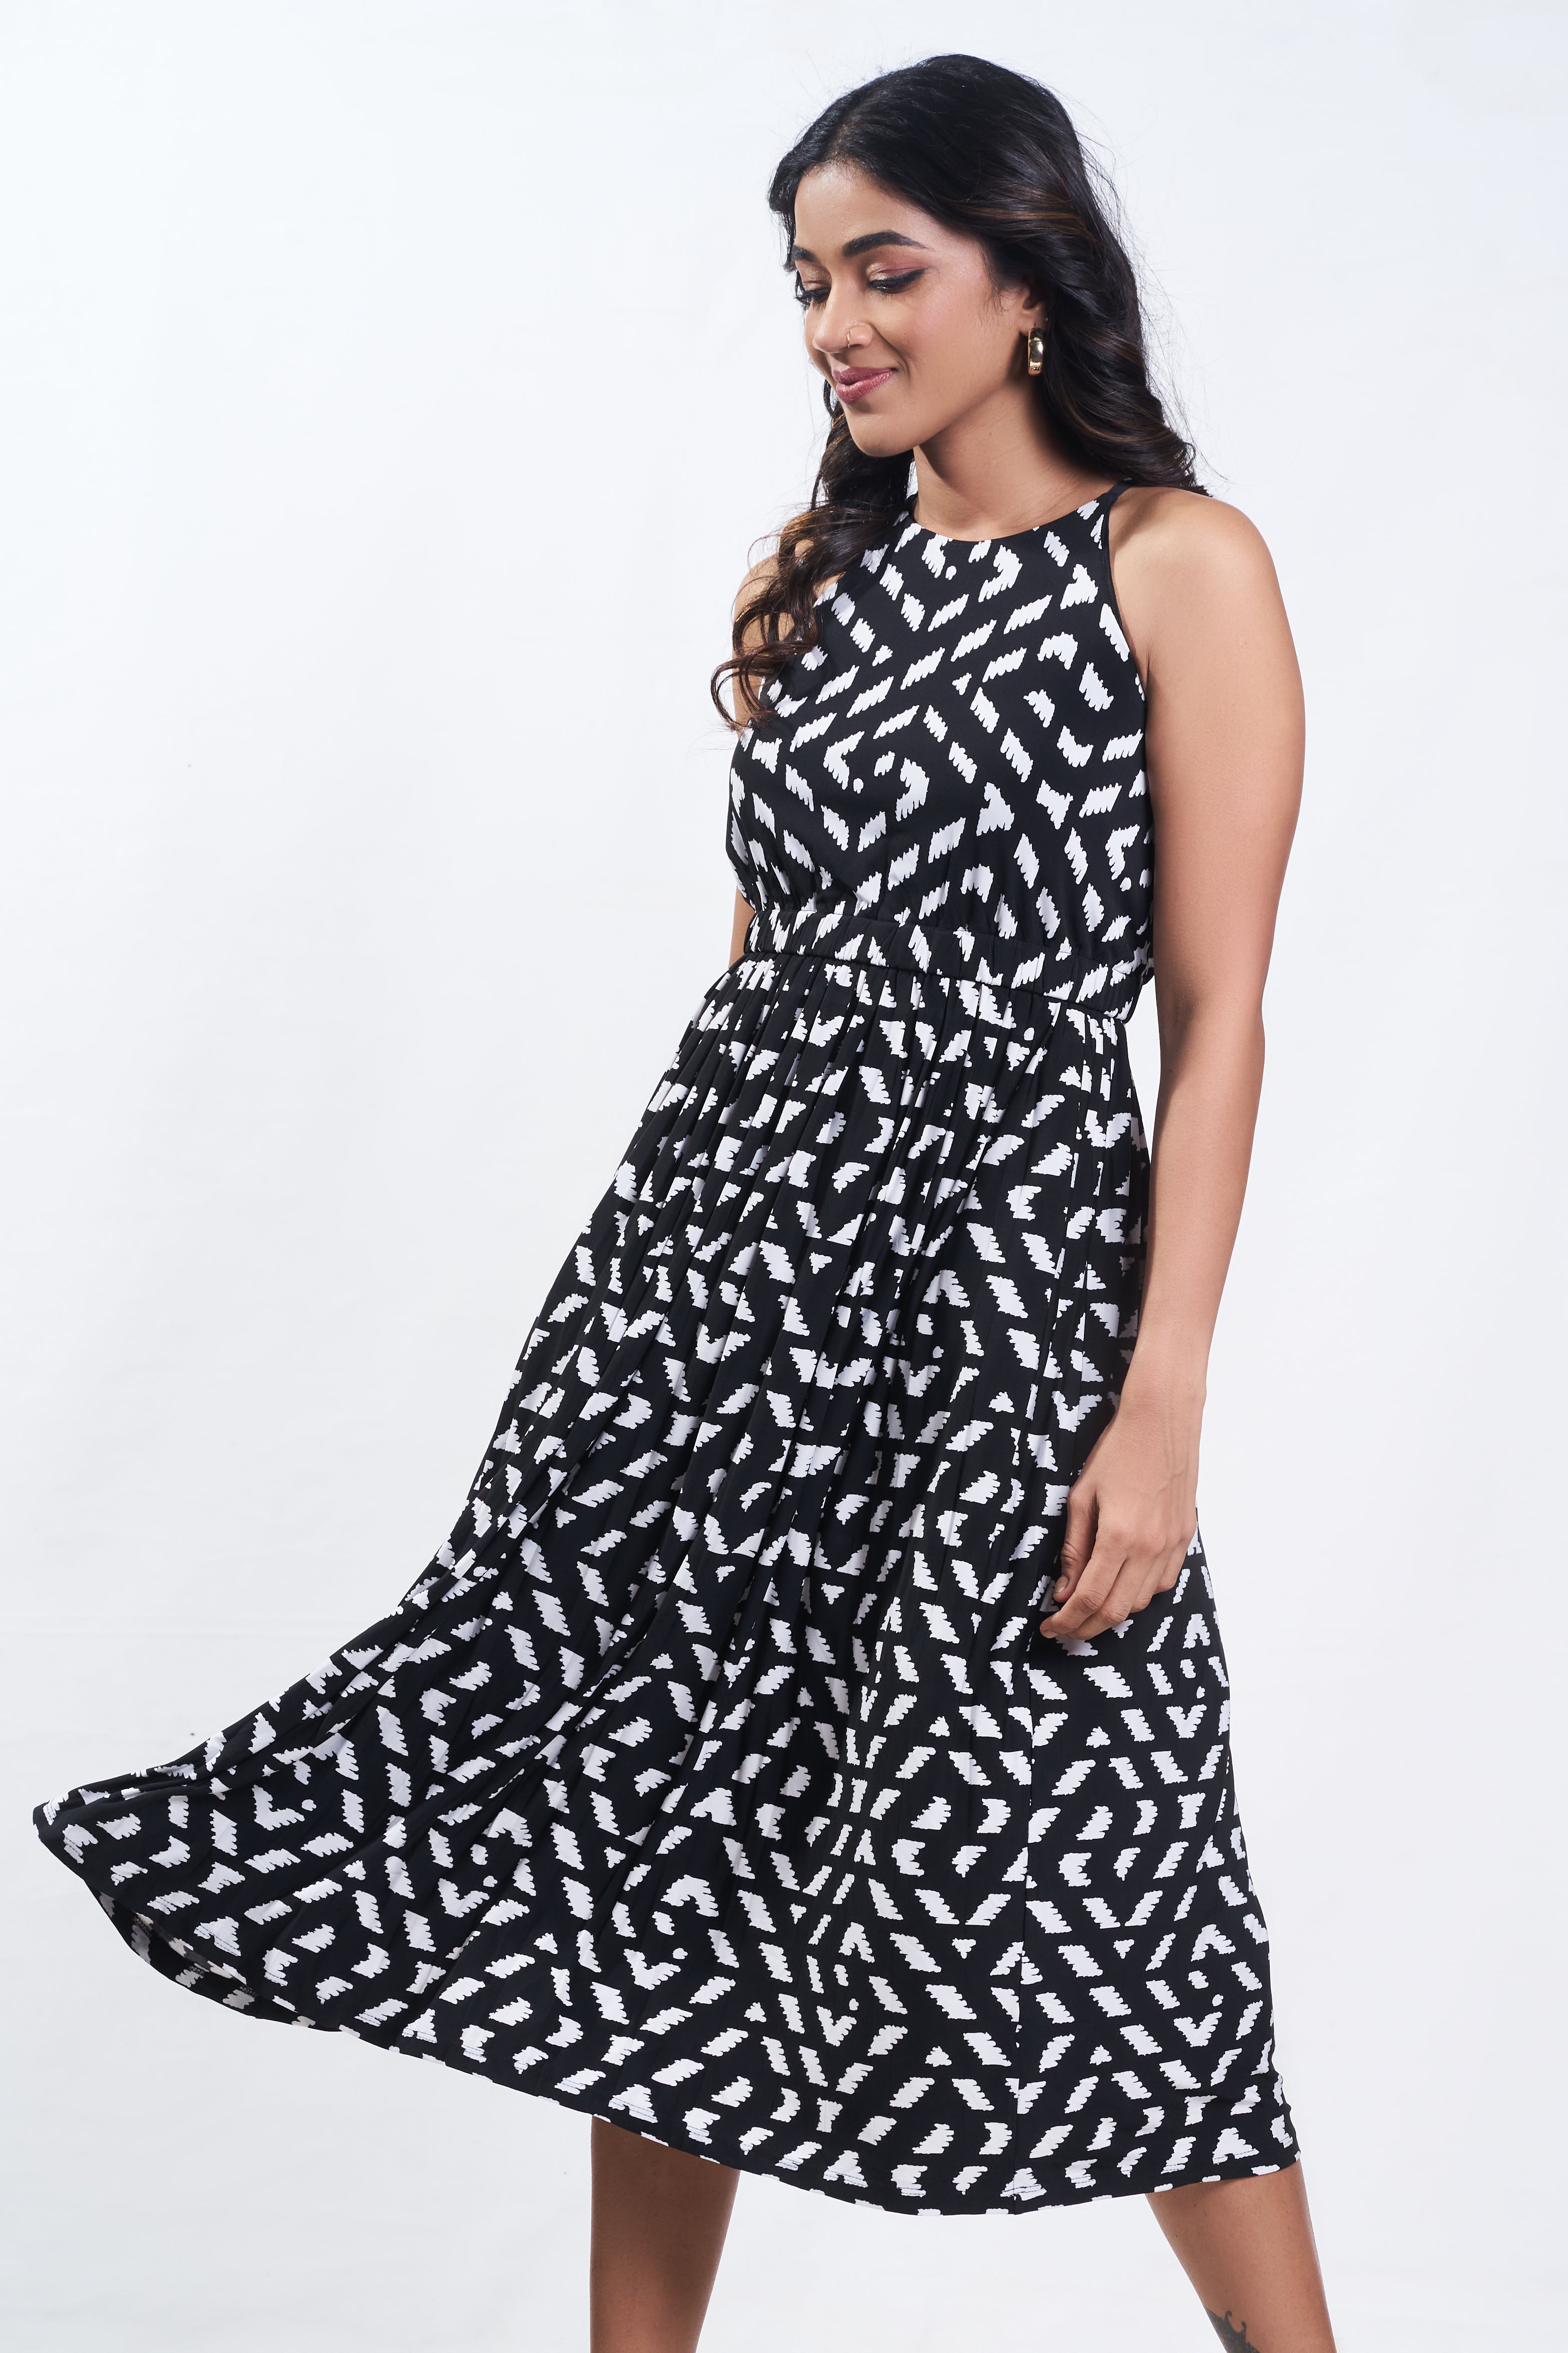 Pinup fashion dress - Avirate Sri Lanka